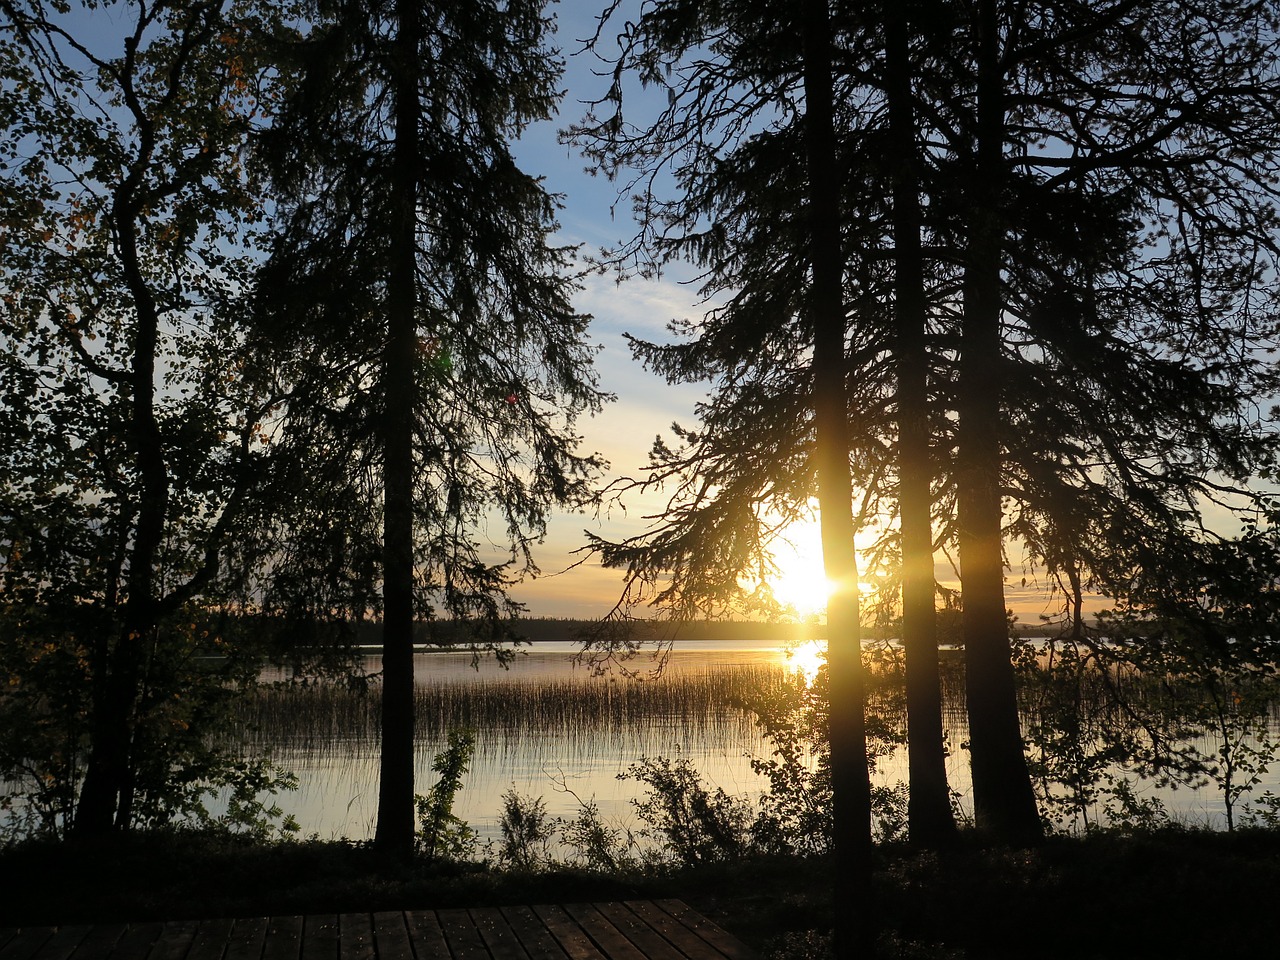 フィンランドの湖